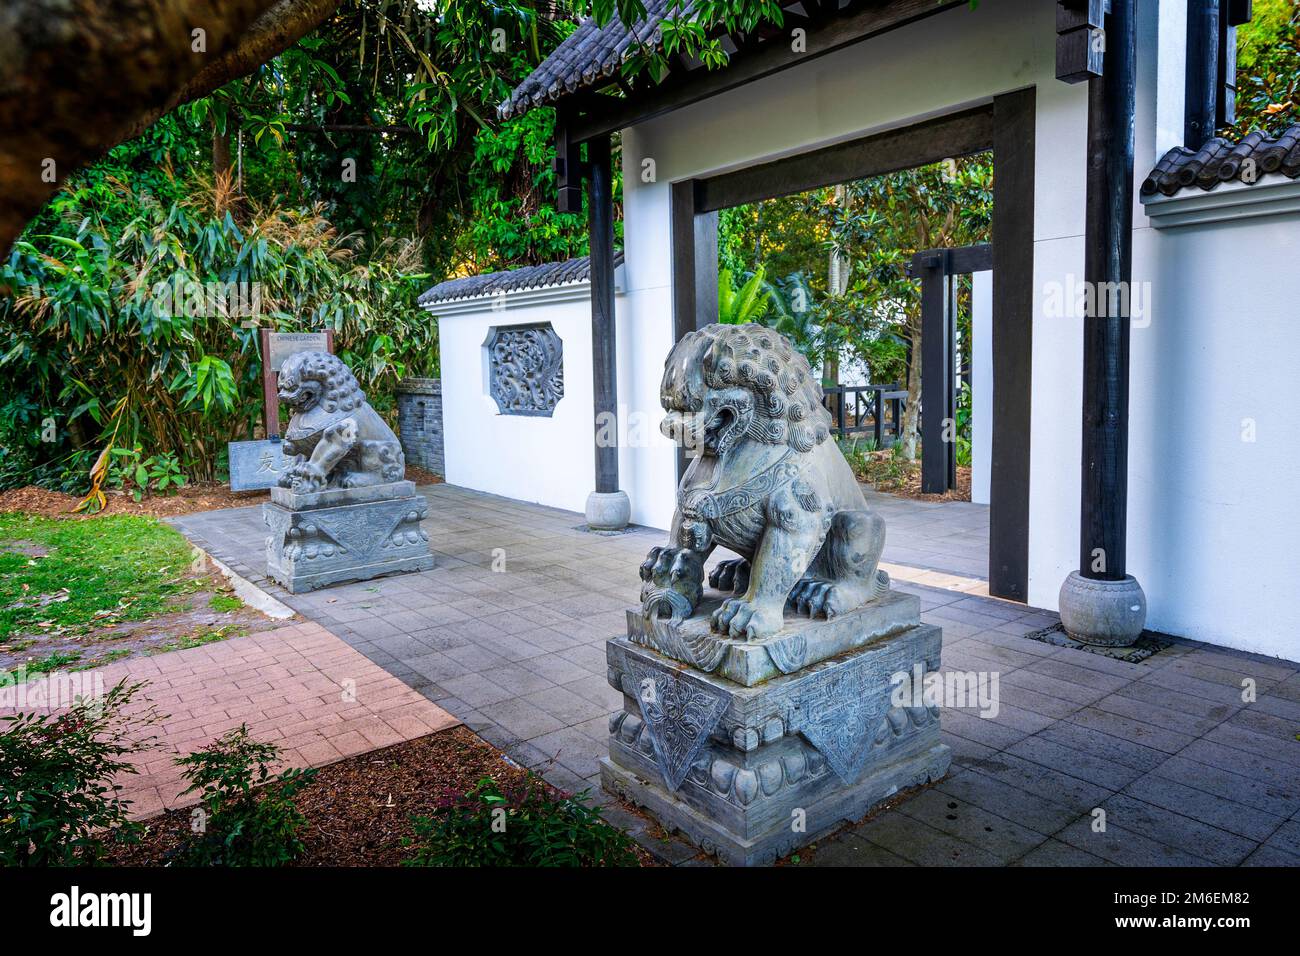 Lions de gardien chinois à l'entrée du jardin chinois de Hervey Bay, du jardin botanique de Hervey Bay, d'Urangan Hervey Bay Queensland Australie Banque D'Images